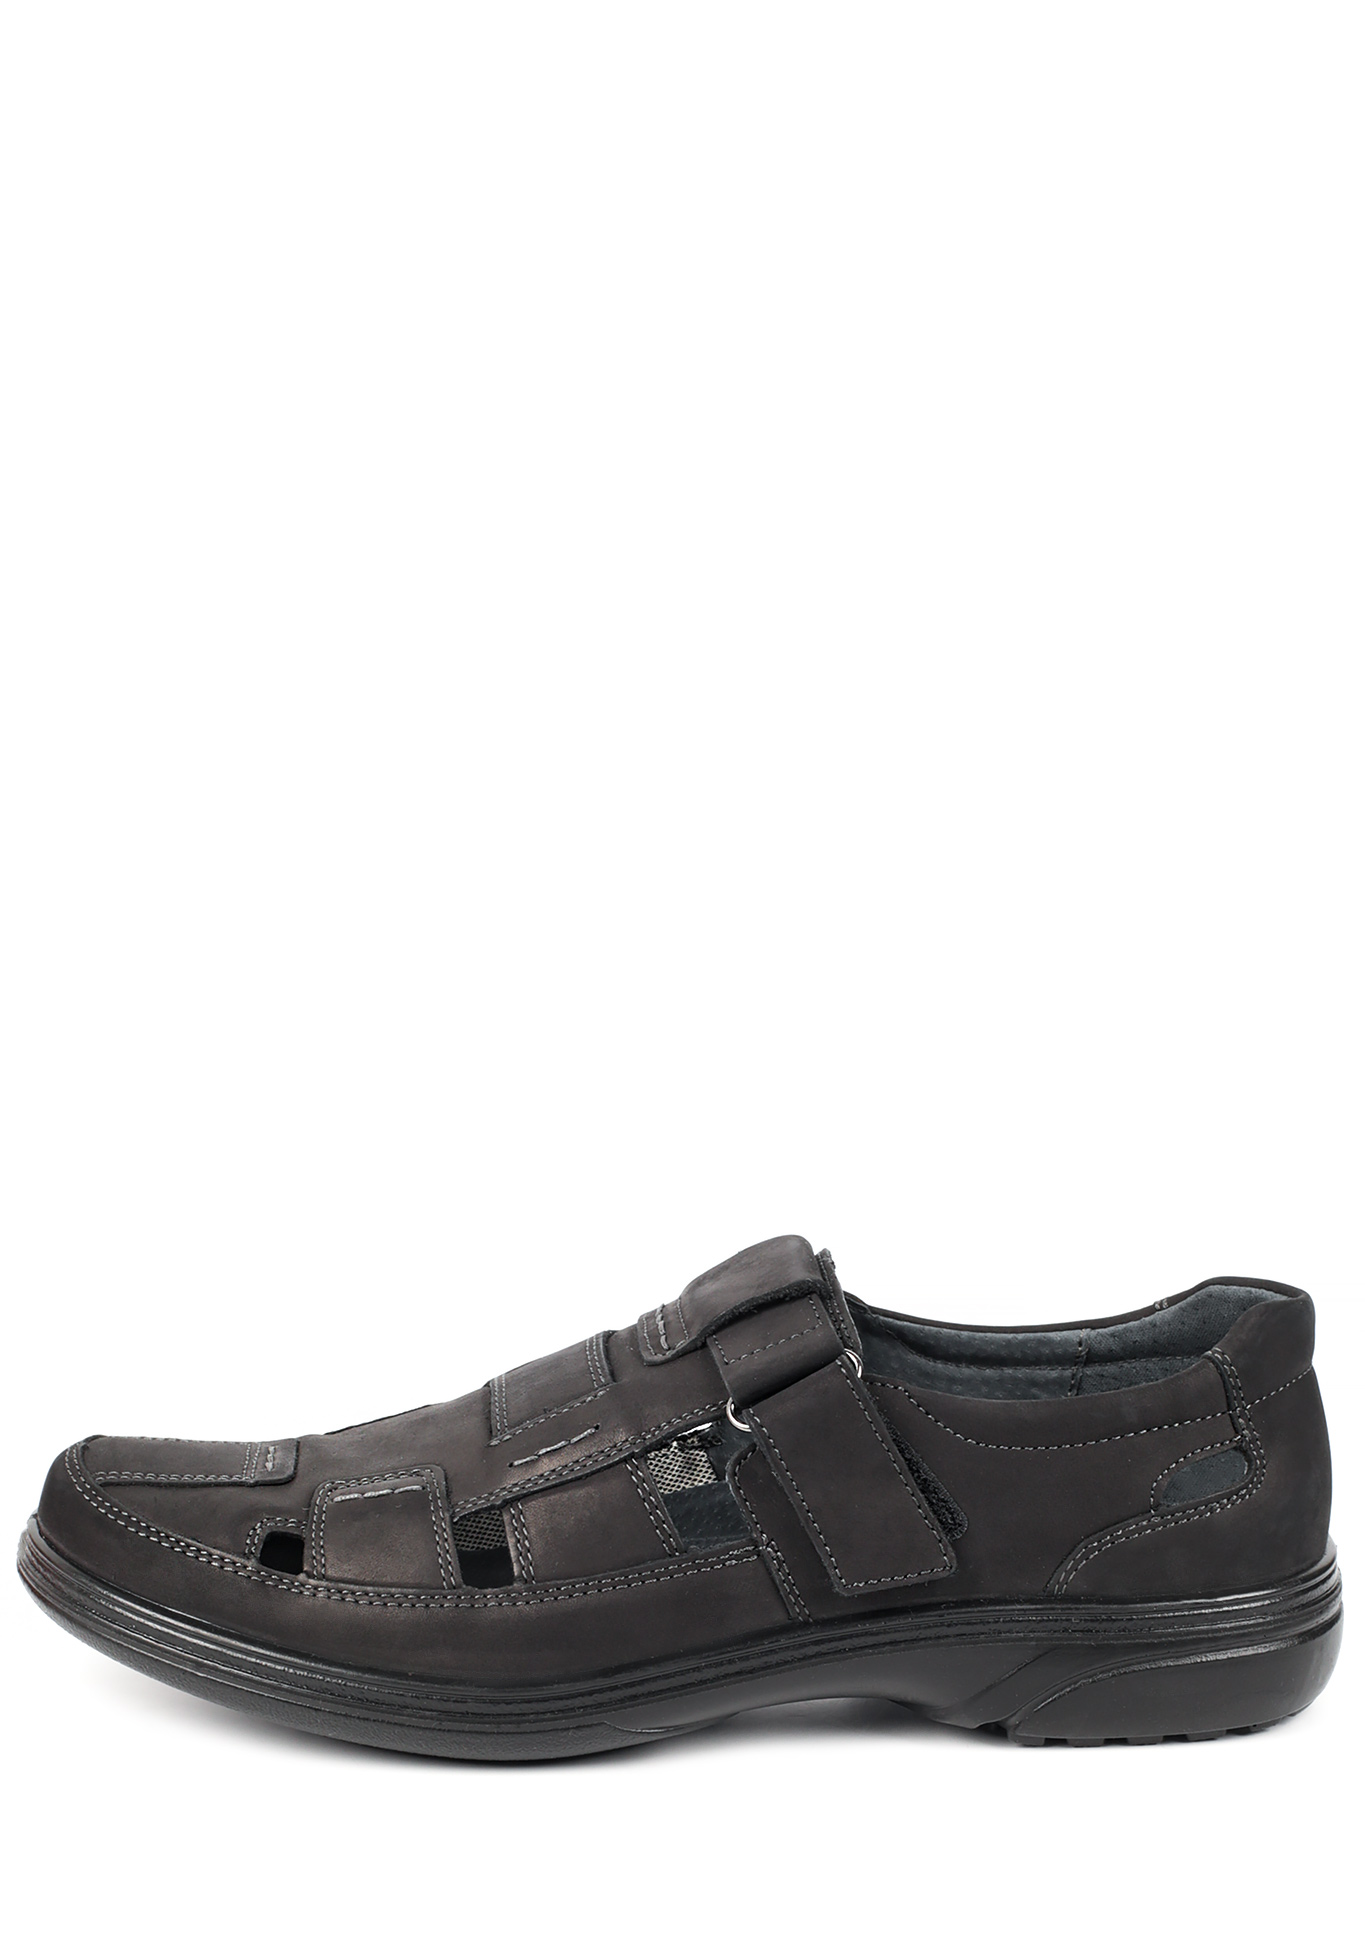 Туфли летние мужские "Ричи" Marko, размер 41, цвет черный - фото 2